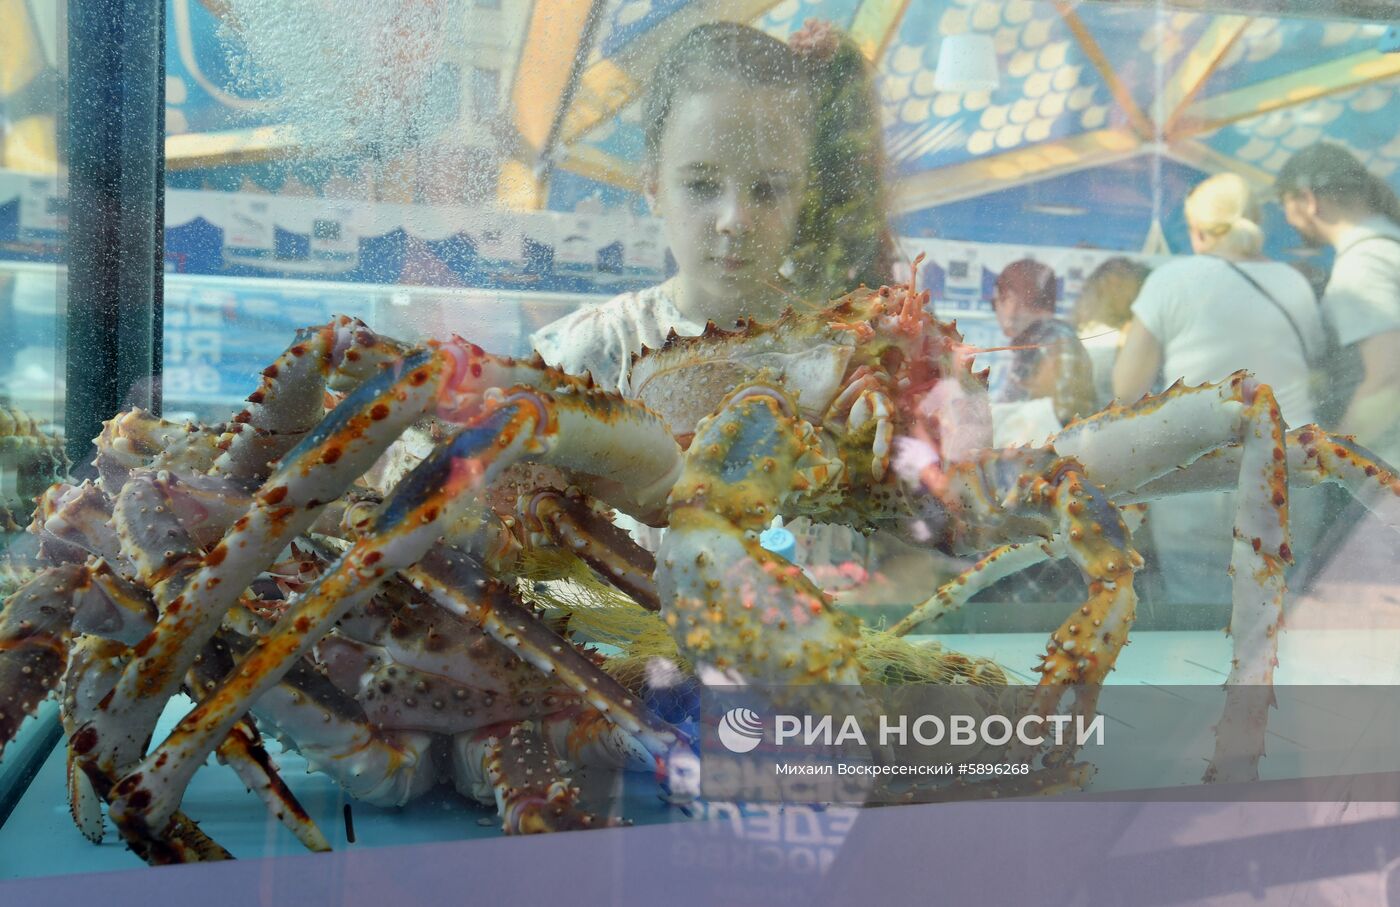 Фестиваль "Рыбная неделя" в Москве